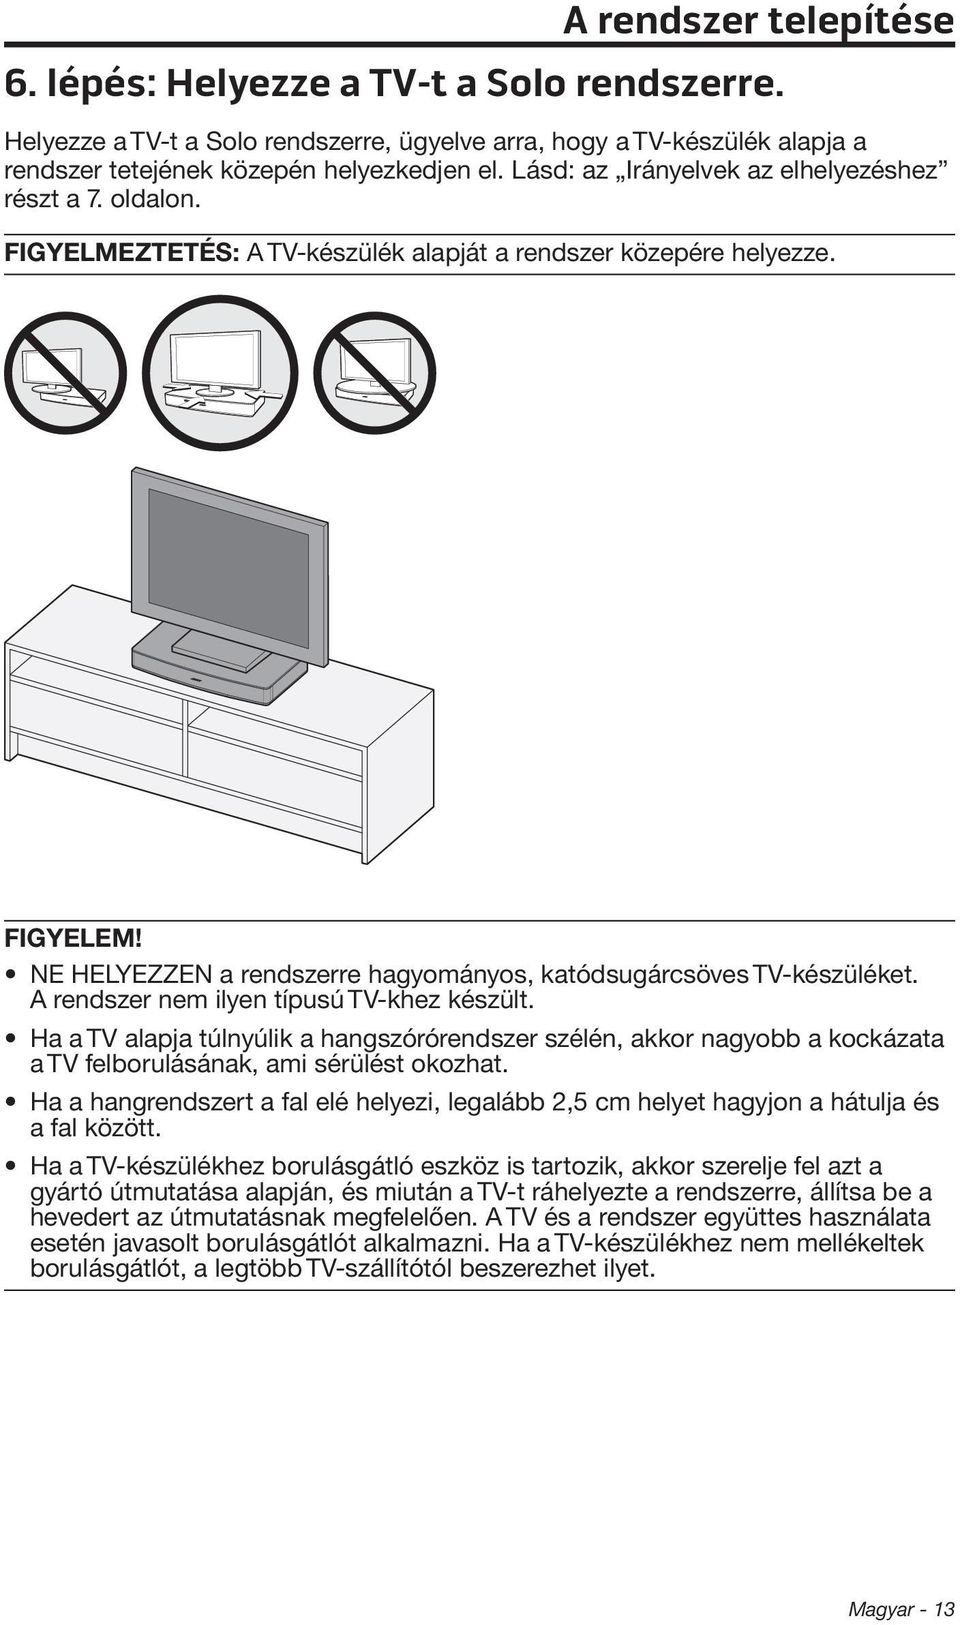 NE HELYEZZEN a rendszerre hagyományos, katódsugárcsöves TV-készüléket. A rendszer nem ilyen típusú TV-khez készült.